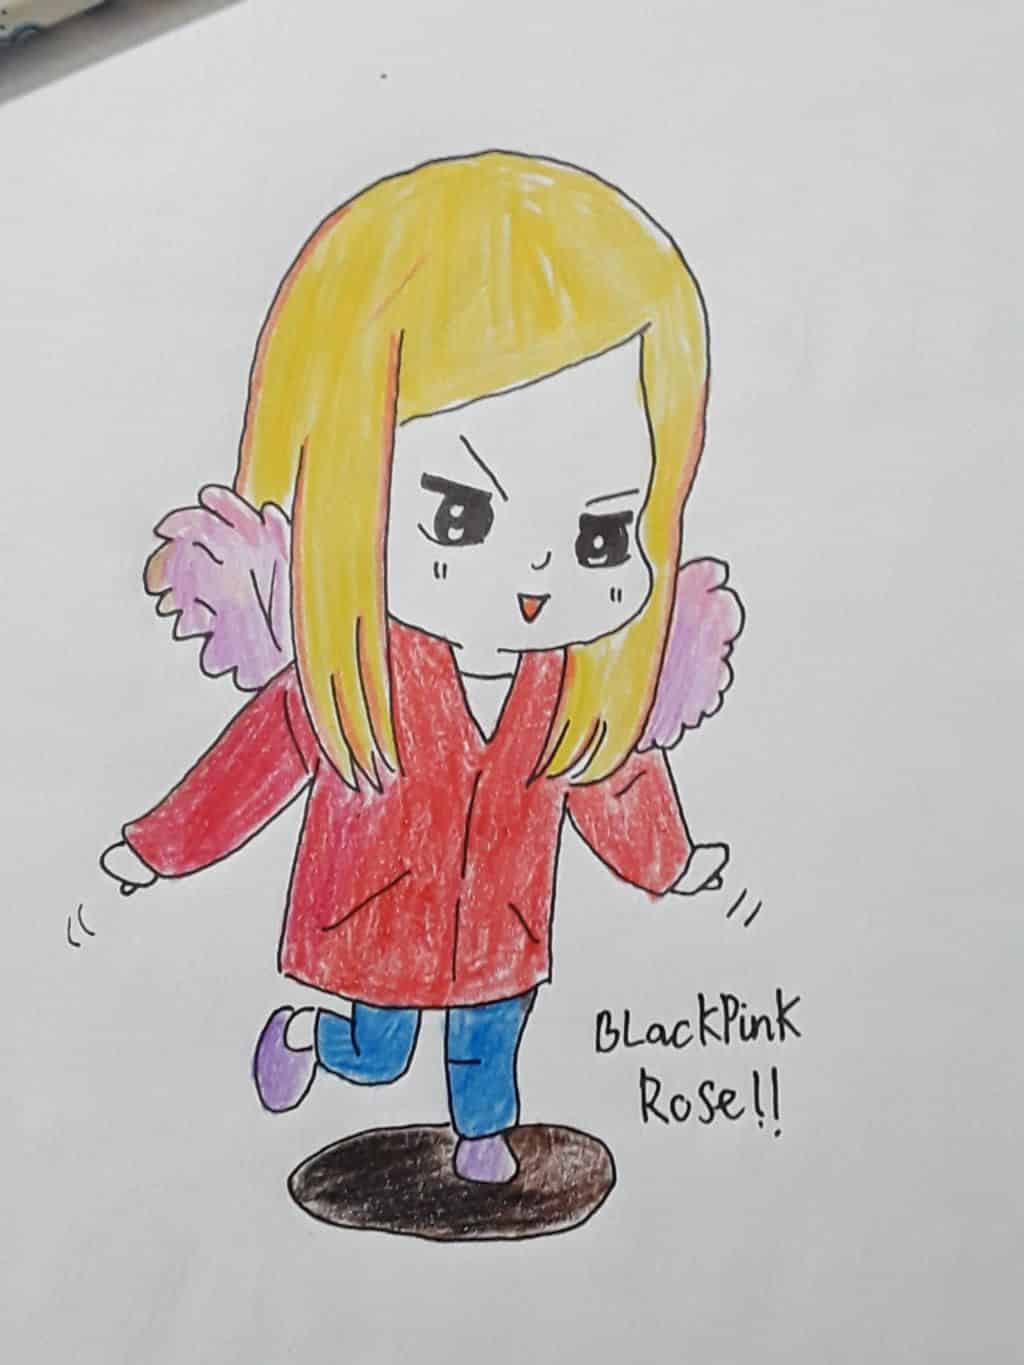 Học vẽ rose blackpink chibi từ cơ bản đến nâng cao: Rose là một trong những thành viên của Blackpink được yêu thích nhất và học vẽ chibi từ cô ấy là điều đặc biệt. Hãy đến với chúng tôi và học hỏi cách vẽ rose Blackpink chibi từ cơ bản đến nâng cao để tạo ra những bức tranh chibi đẹp mắt và sáng tạo.